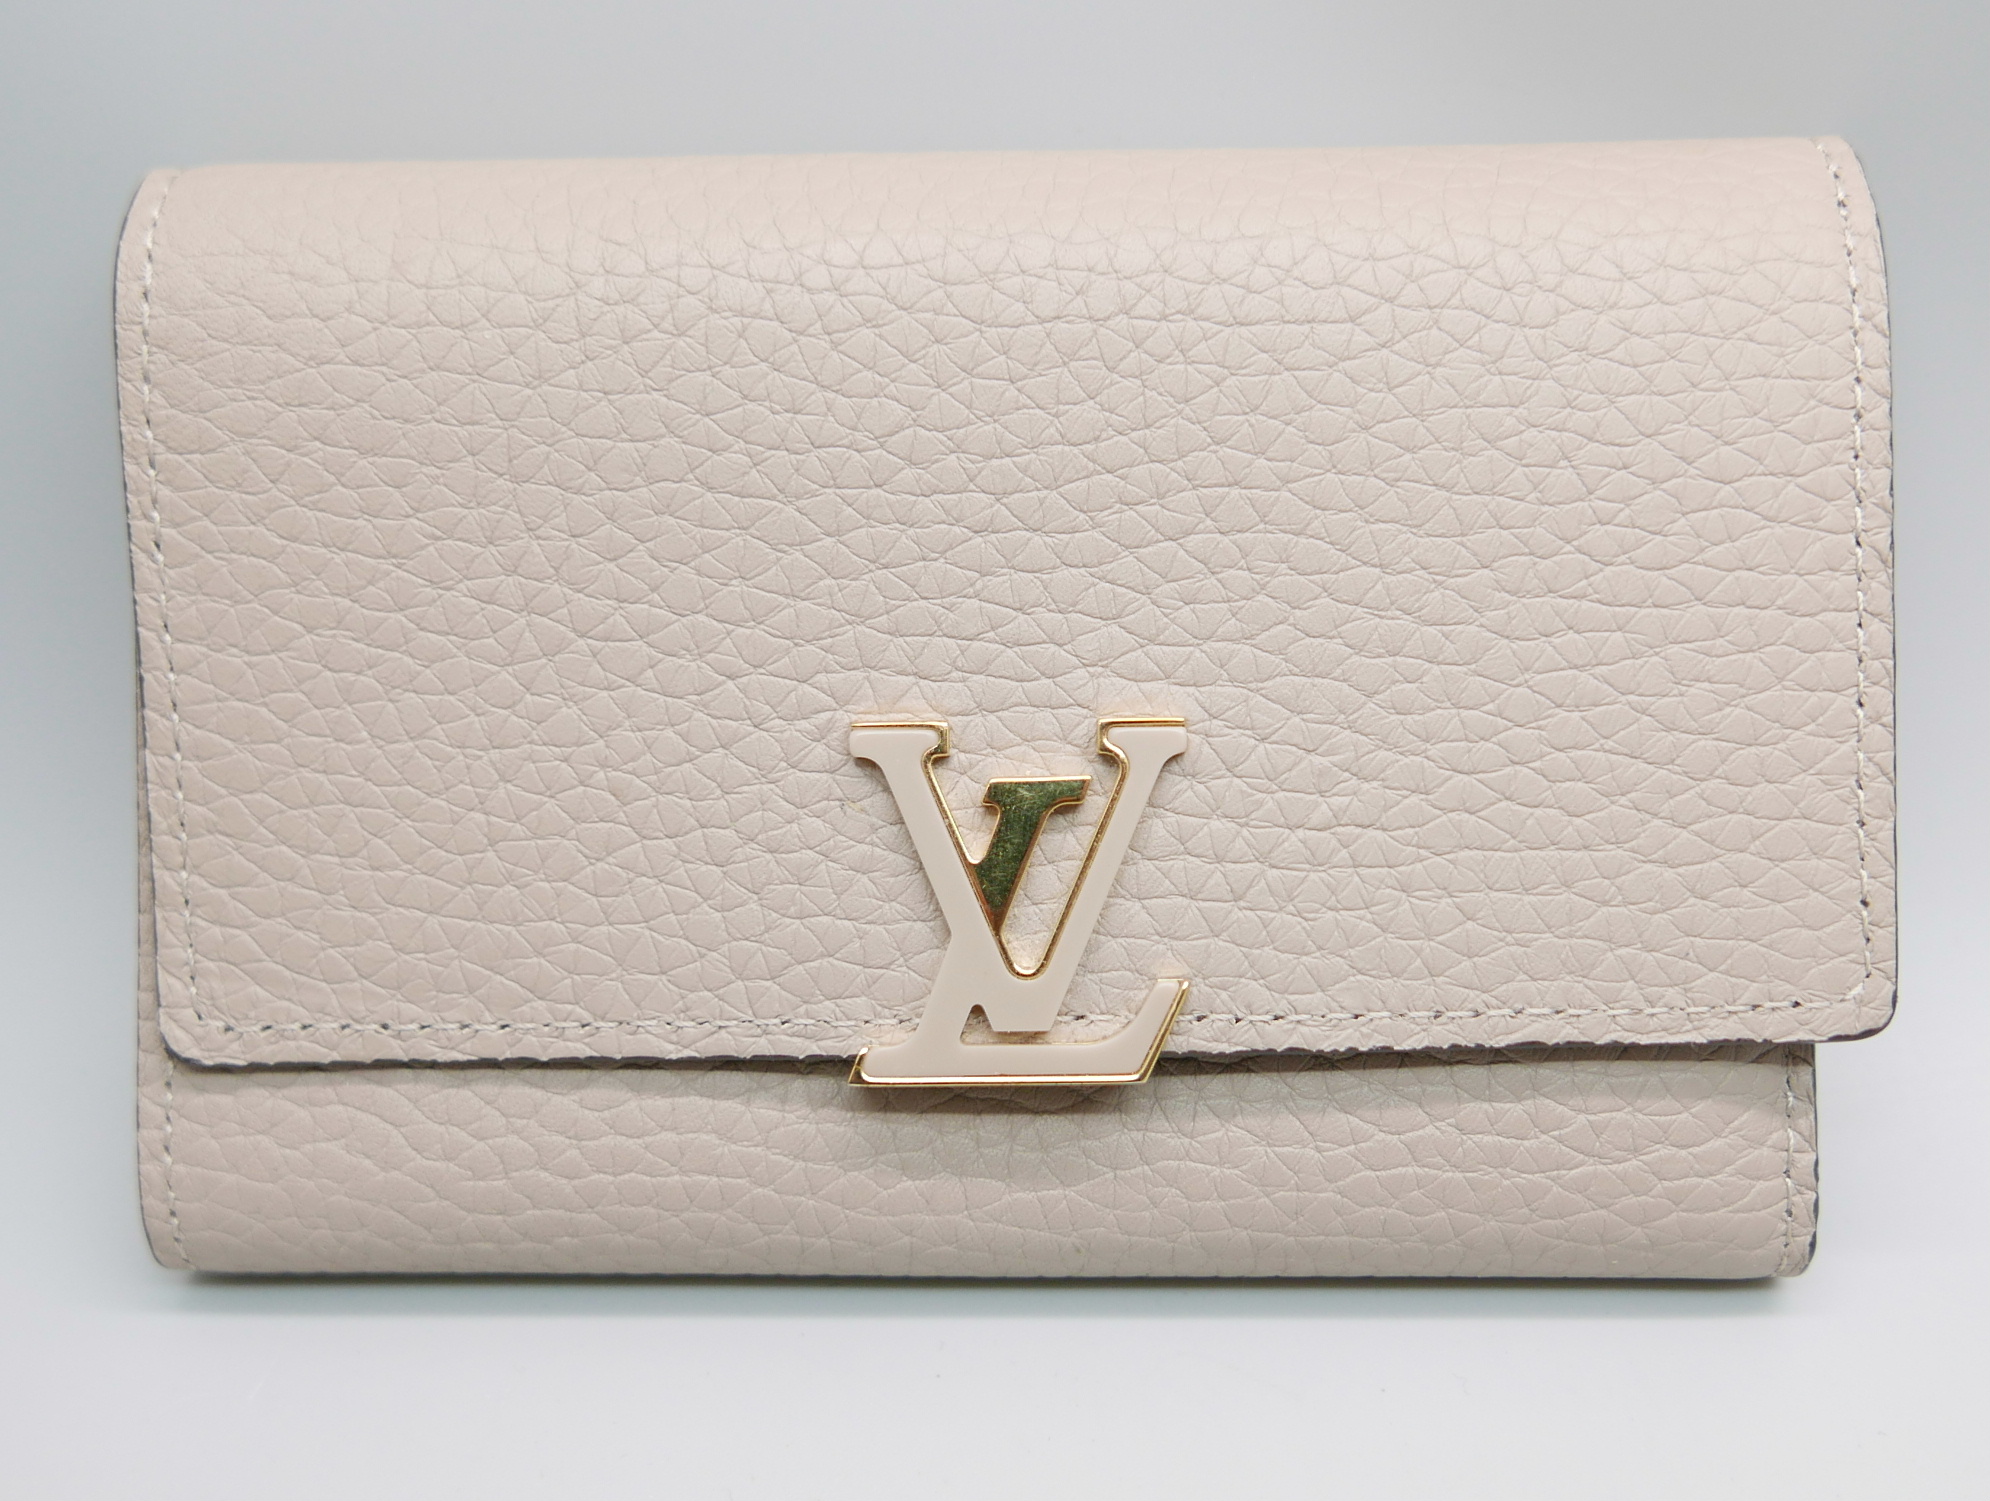 A lady's Louis Vuitton purse, boxed